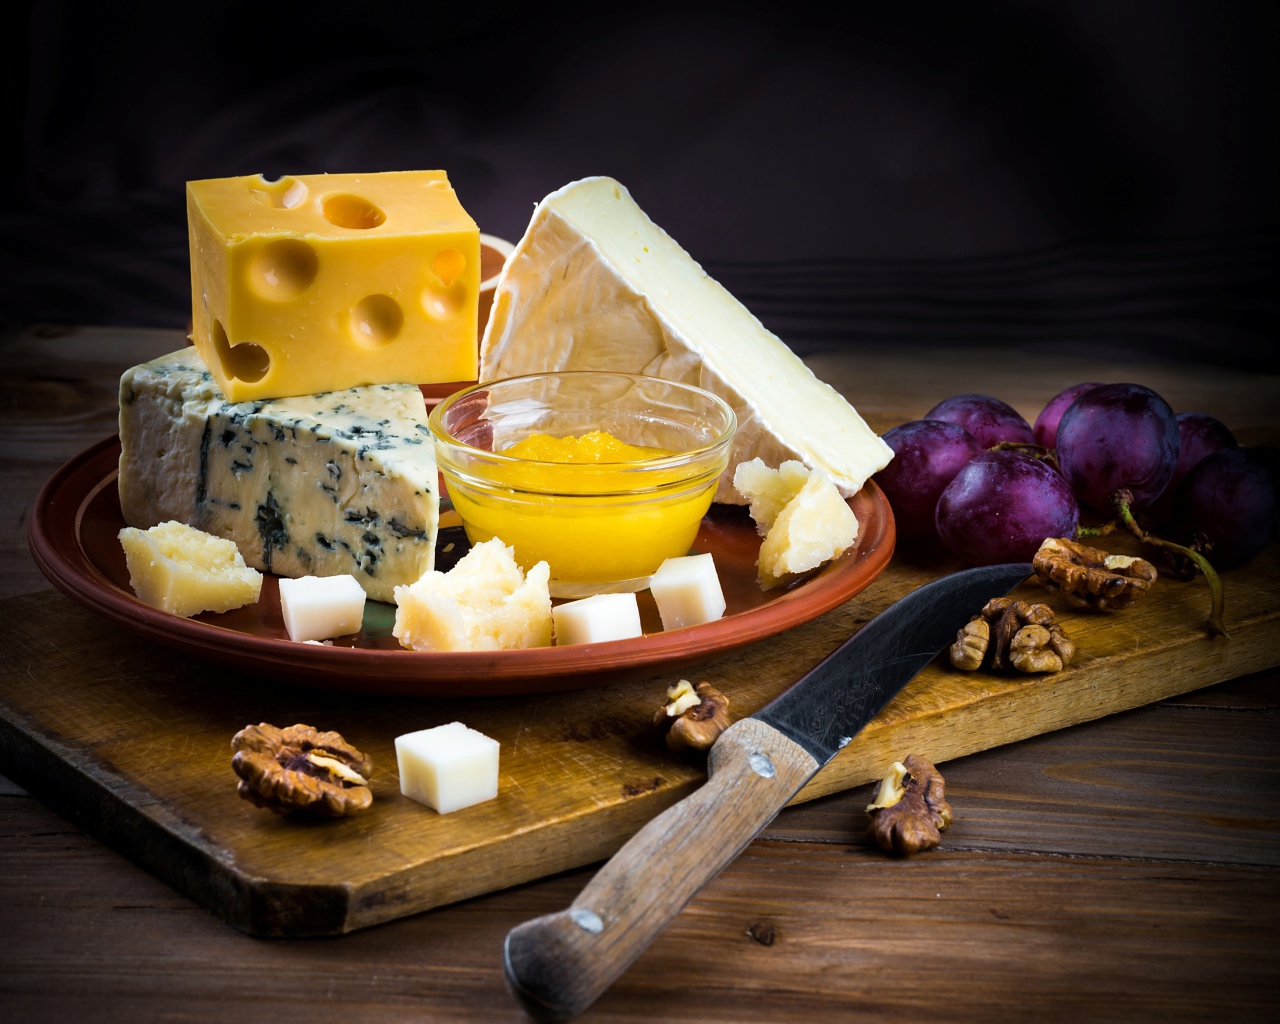 Разные виды сыра на столе с виноградом и орехами